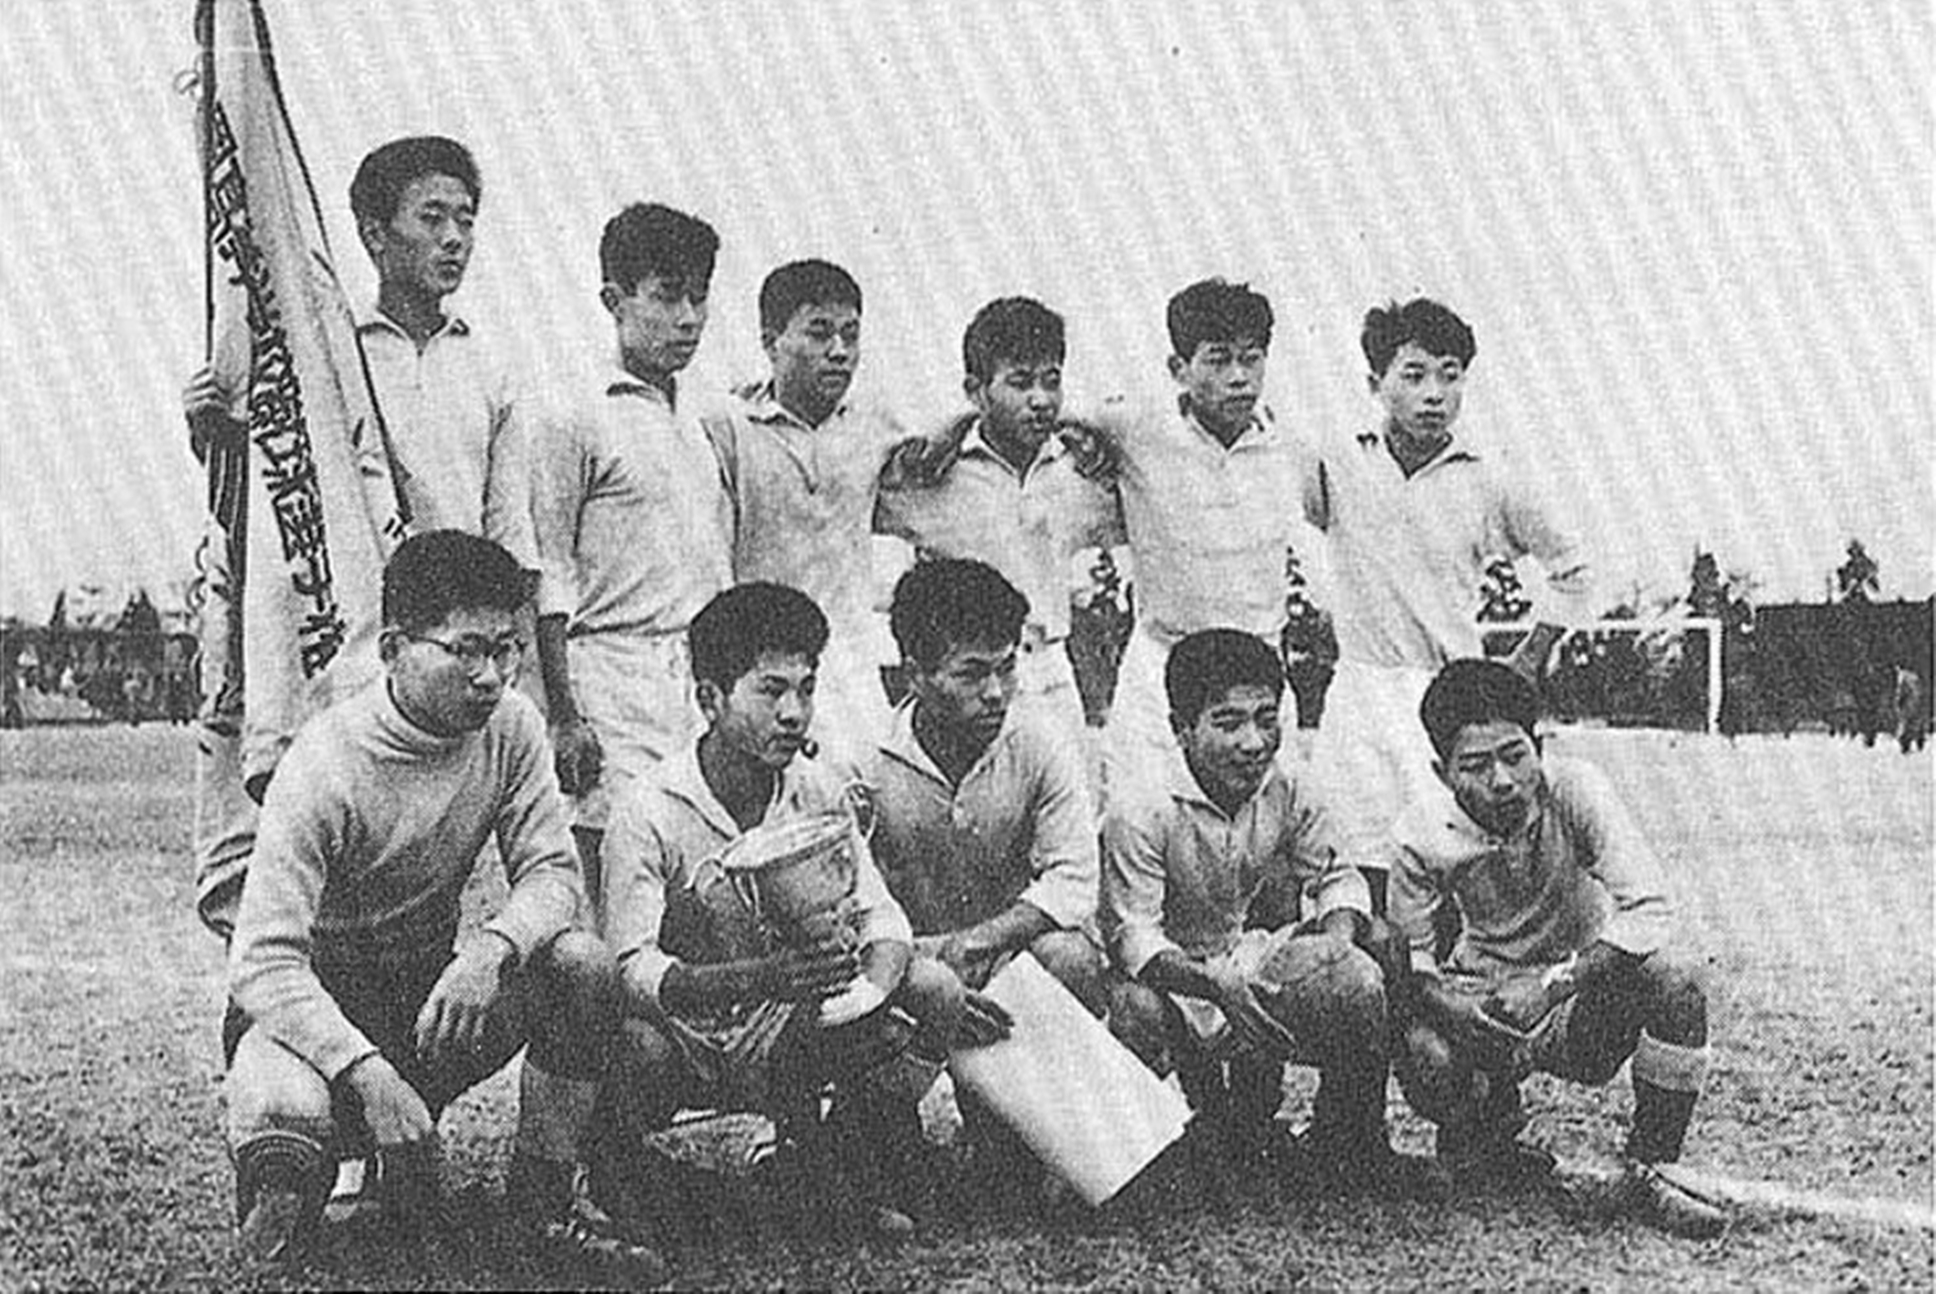 浦和高校に続き、全国選手権優勝を果たした浦和西高校イレブン『浦和・埼玉サッカーの記憶110年目の証言と提言』より